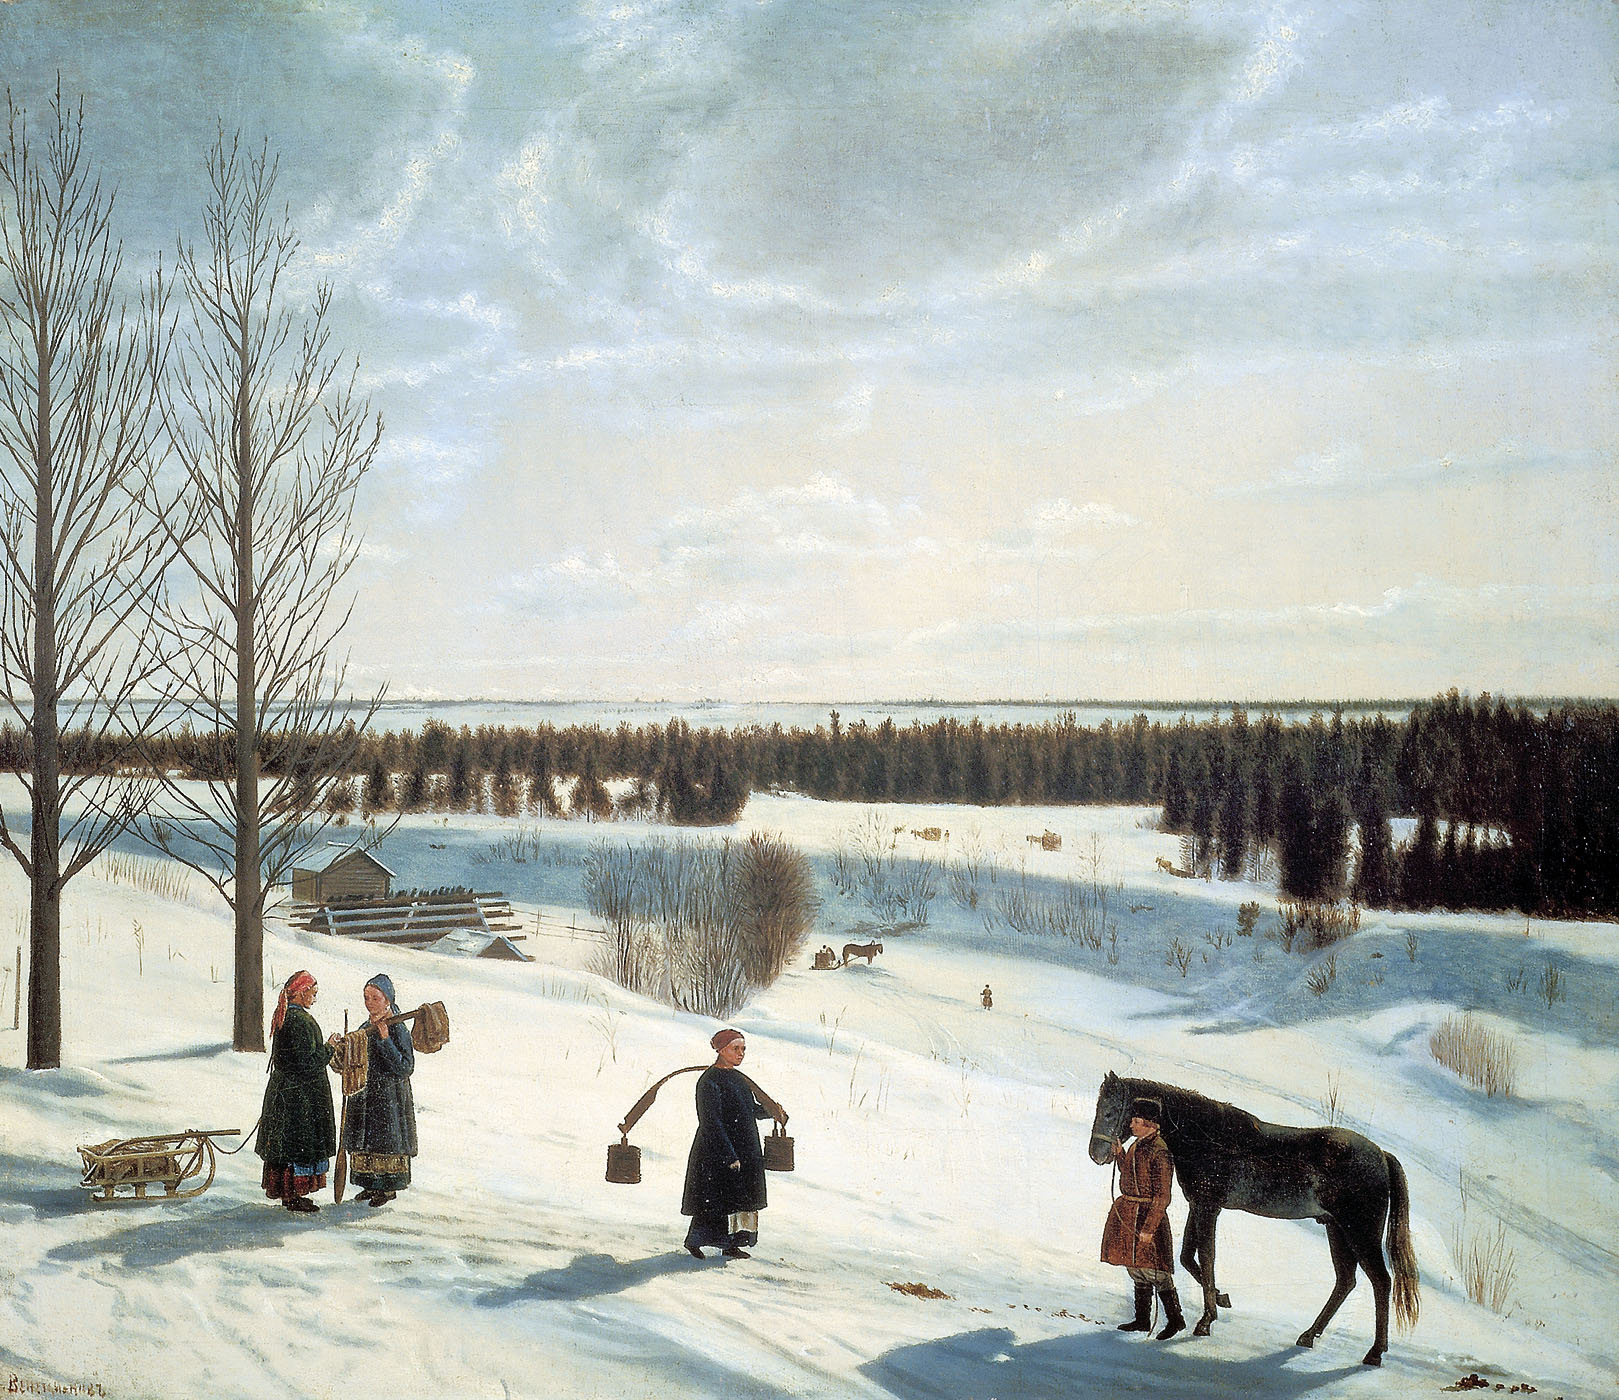 Никифор Крылов. "Зимний пейзаж. Русская зима". 1827.